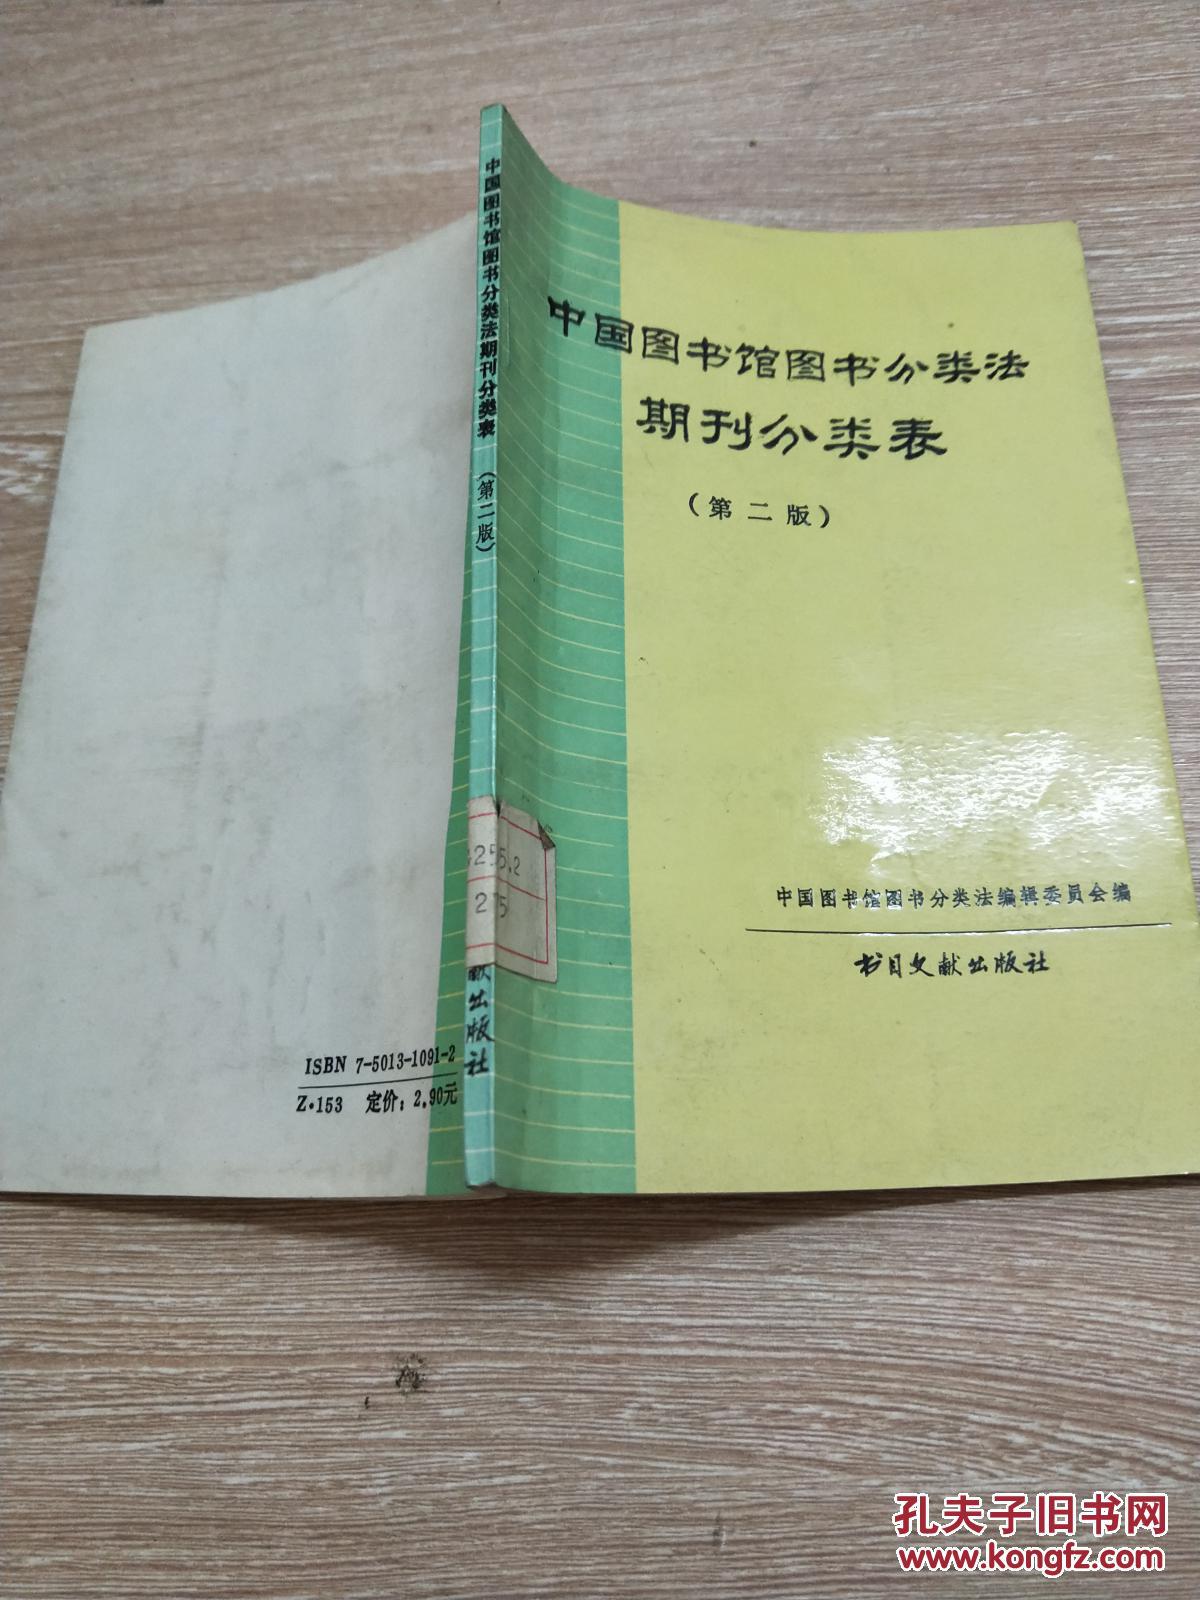 中国图书馆分类法期刊分类表(第2版)